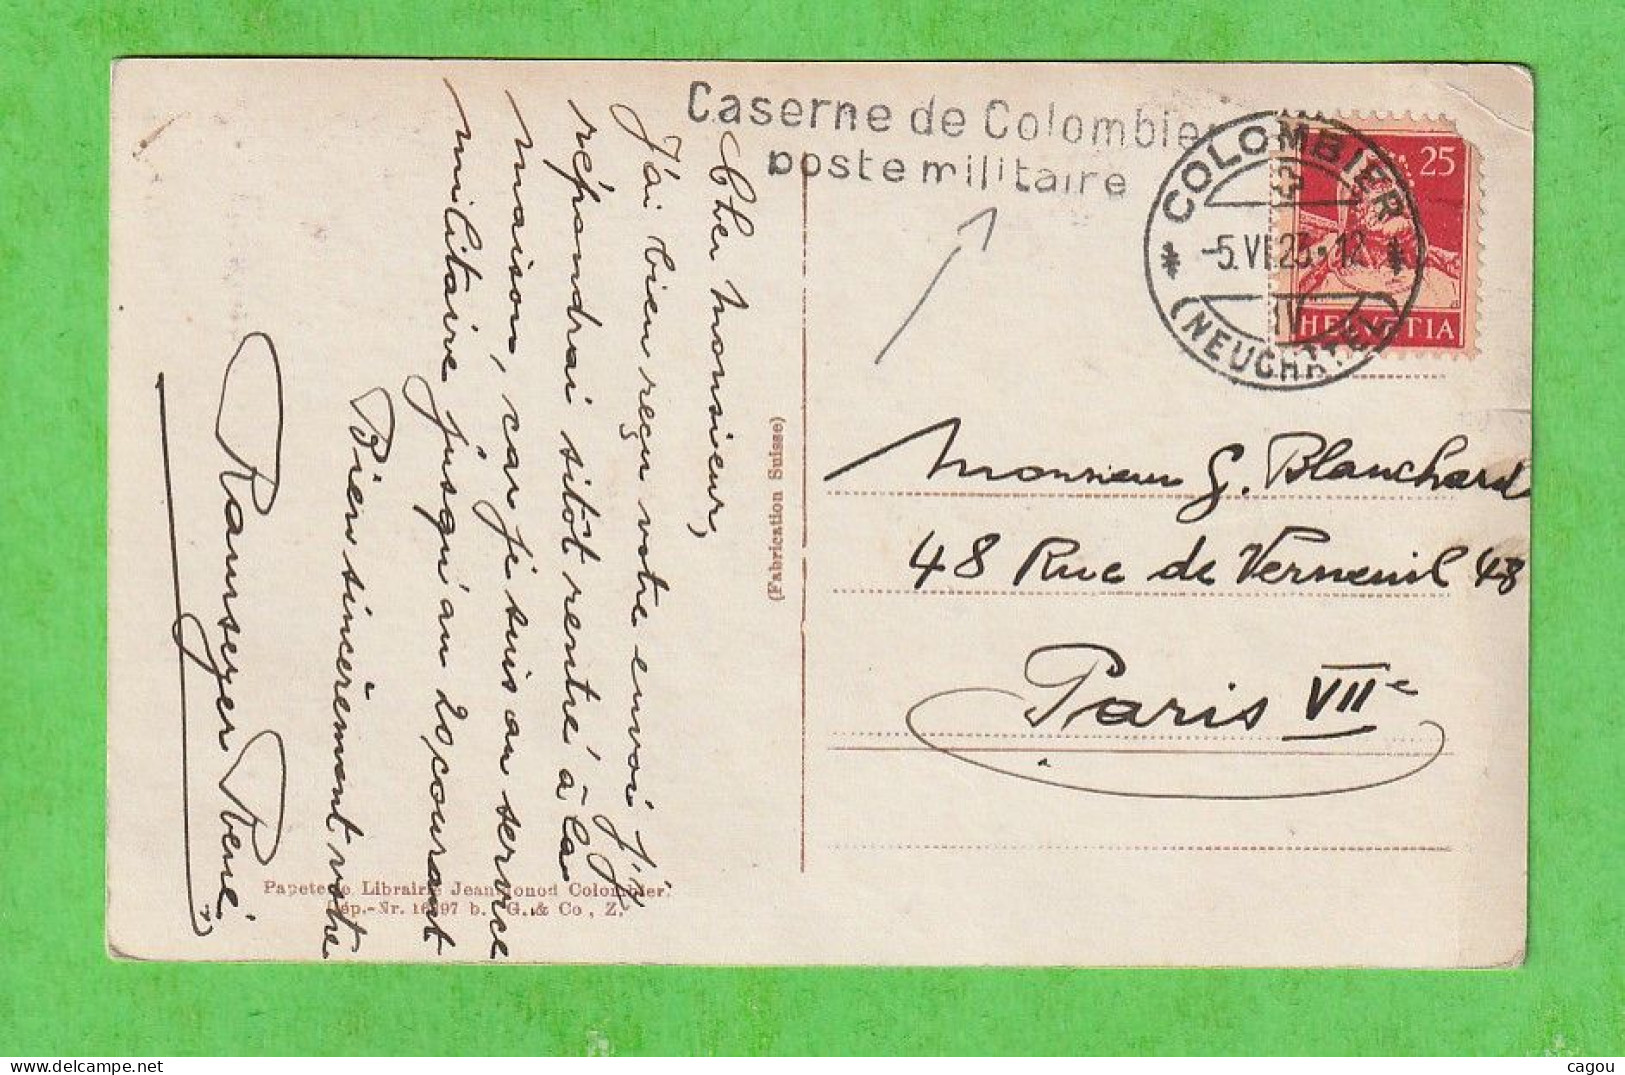 GRIFFE LINEAIRE CASERNE DE COLOMBIER POSTE MILITAIRE + CT COLOMBIER (NEUCHATEL) DE 1923 SUR CARTE COLOMBIER SUISSE - Annullamenti